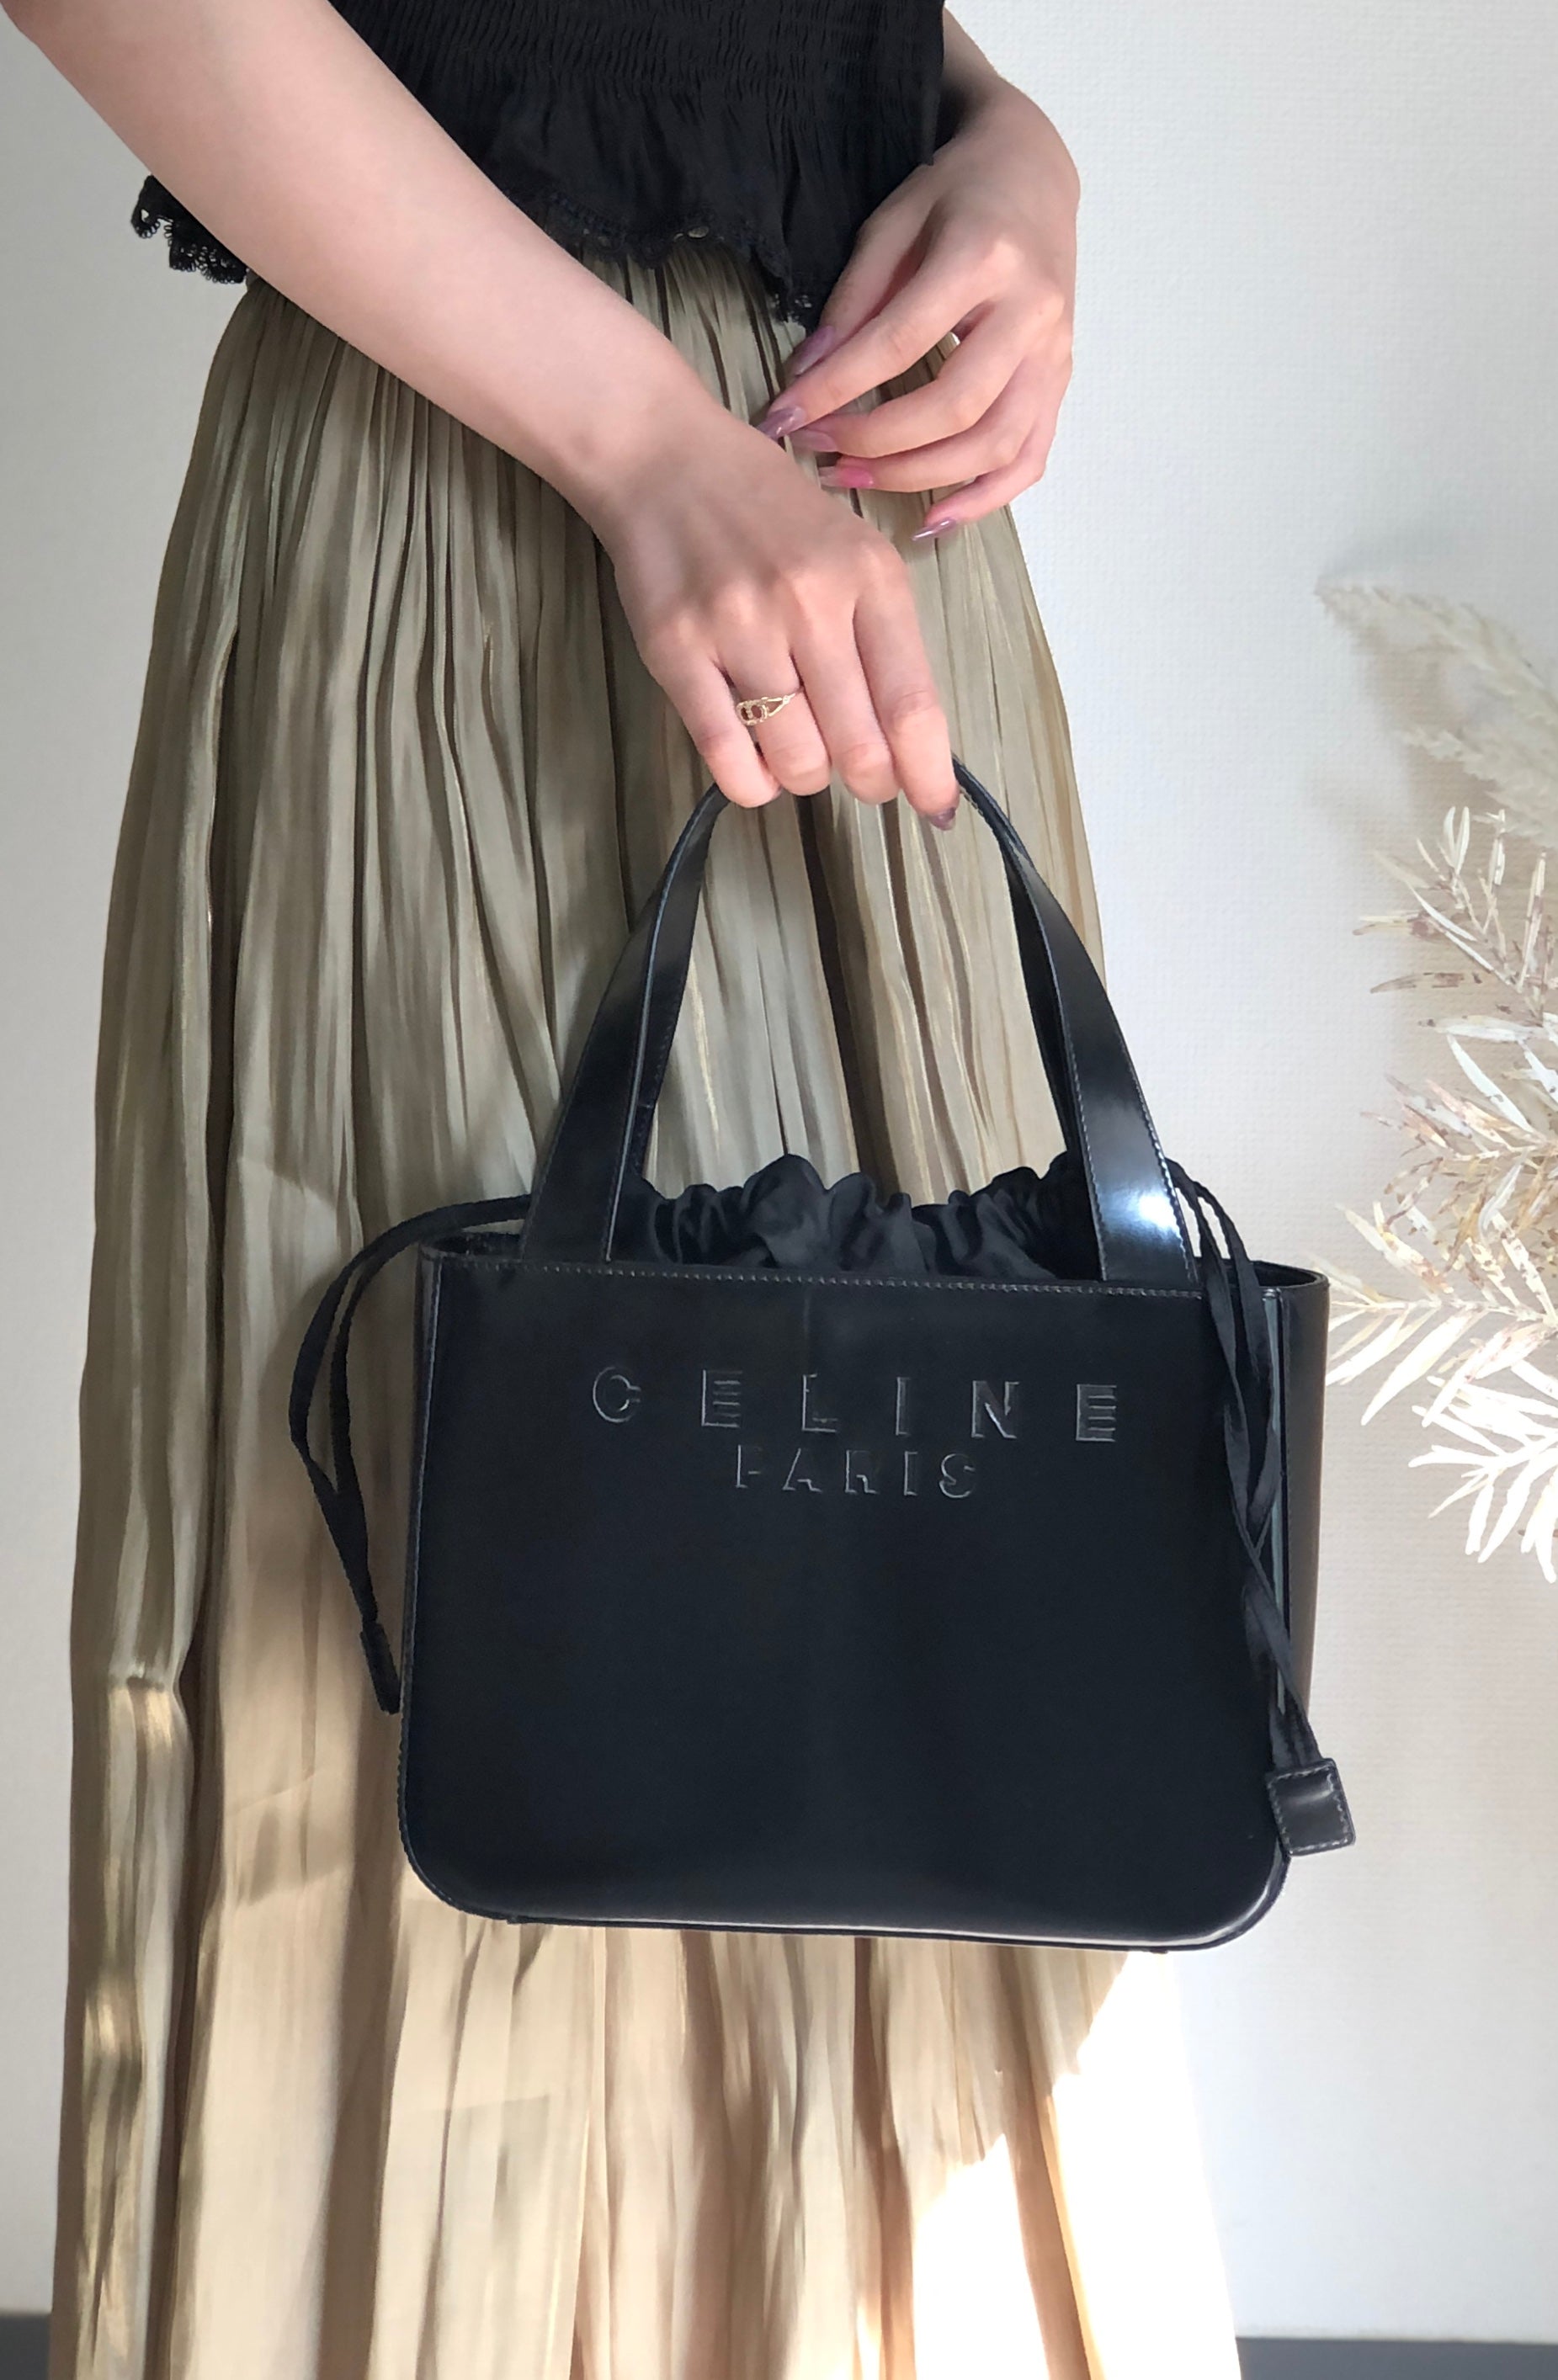 Celine C Bag Medium in Black Patent Leather